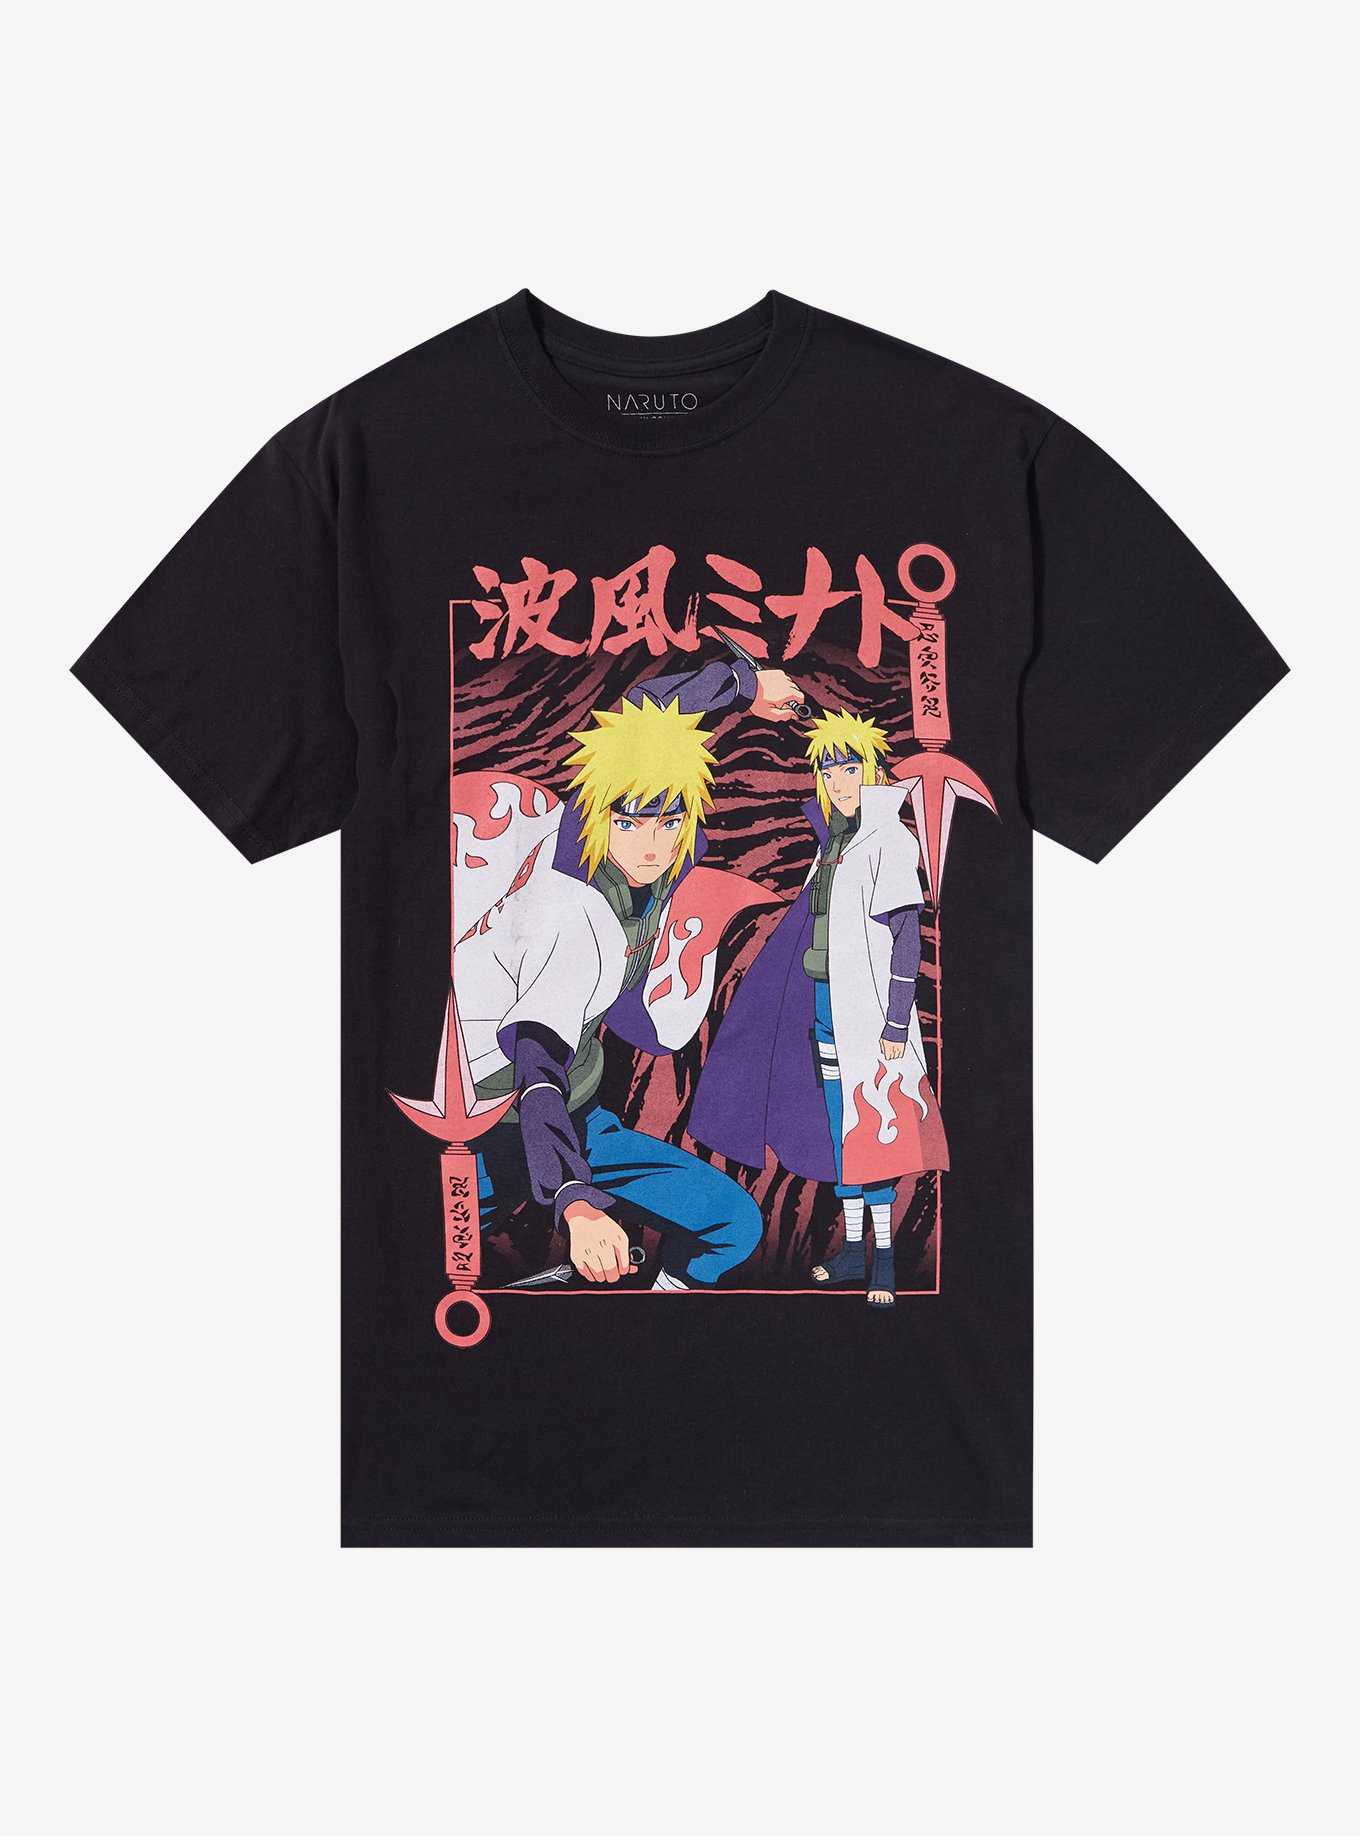 Naruto Shippuden Minato Namikaze Collage T-Shirt, , hi-res